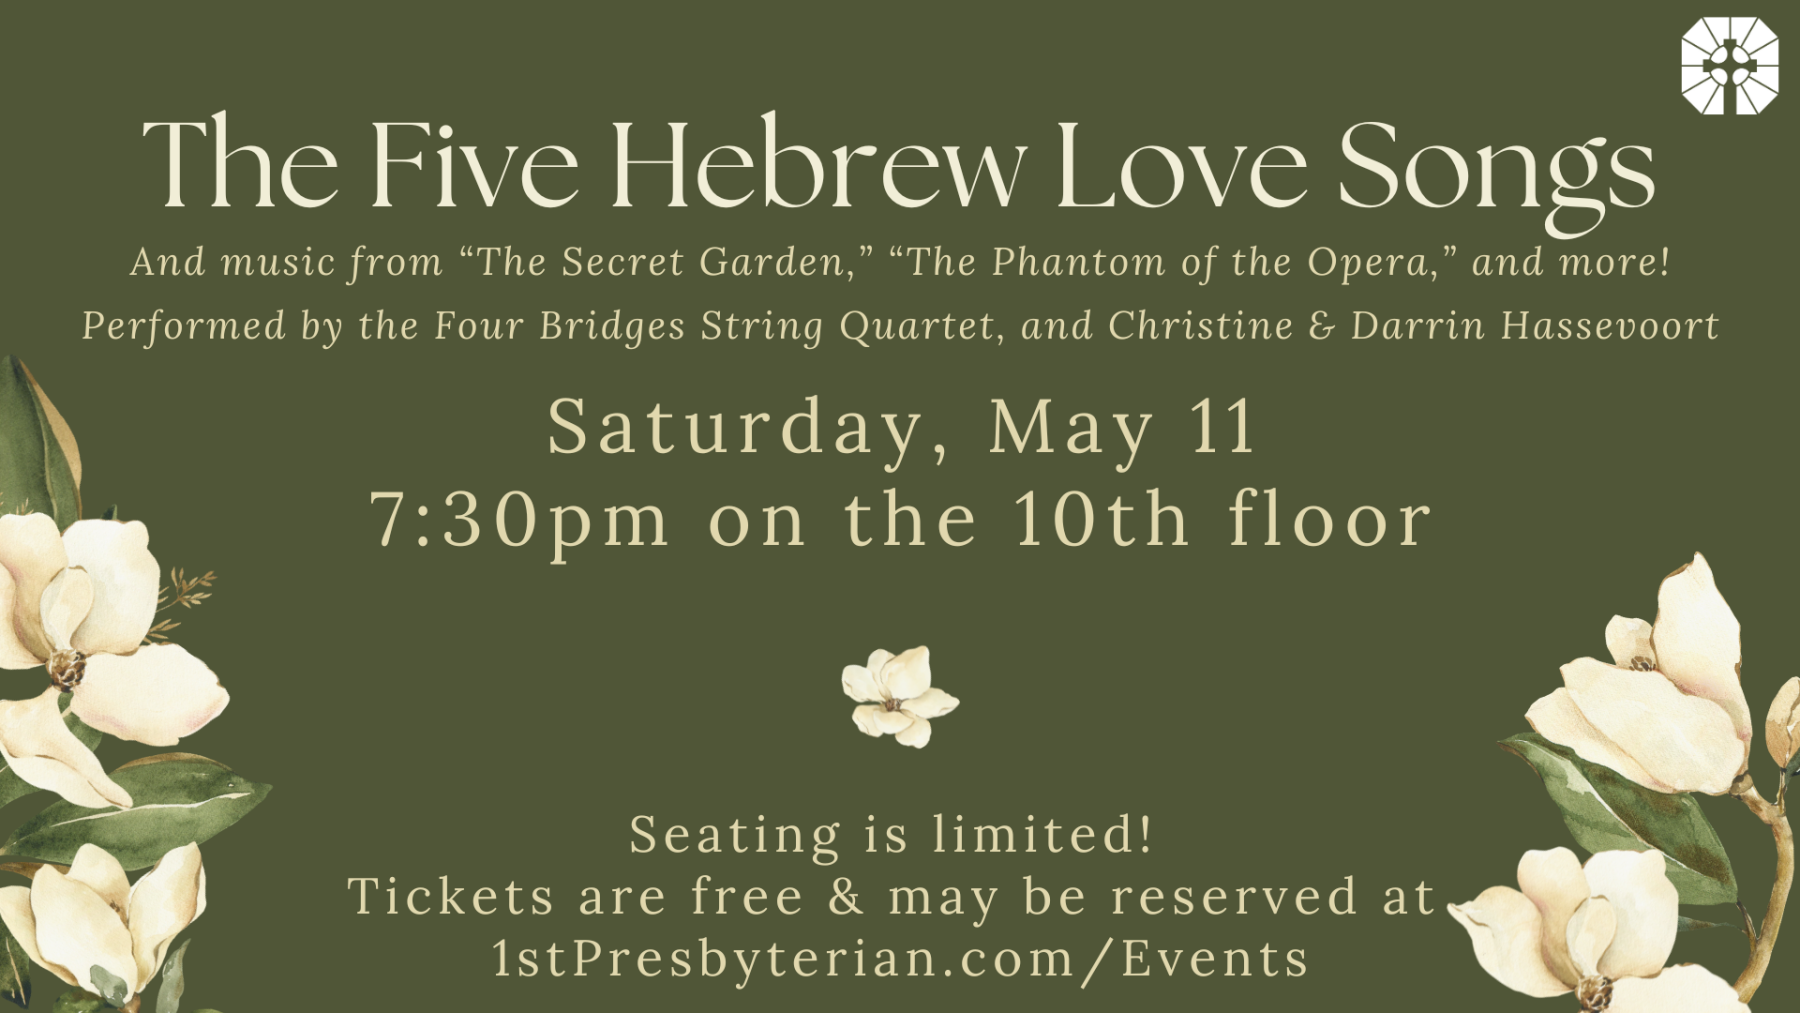 The Five Hebrew Love Songs Concert